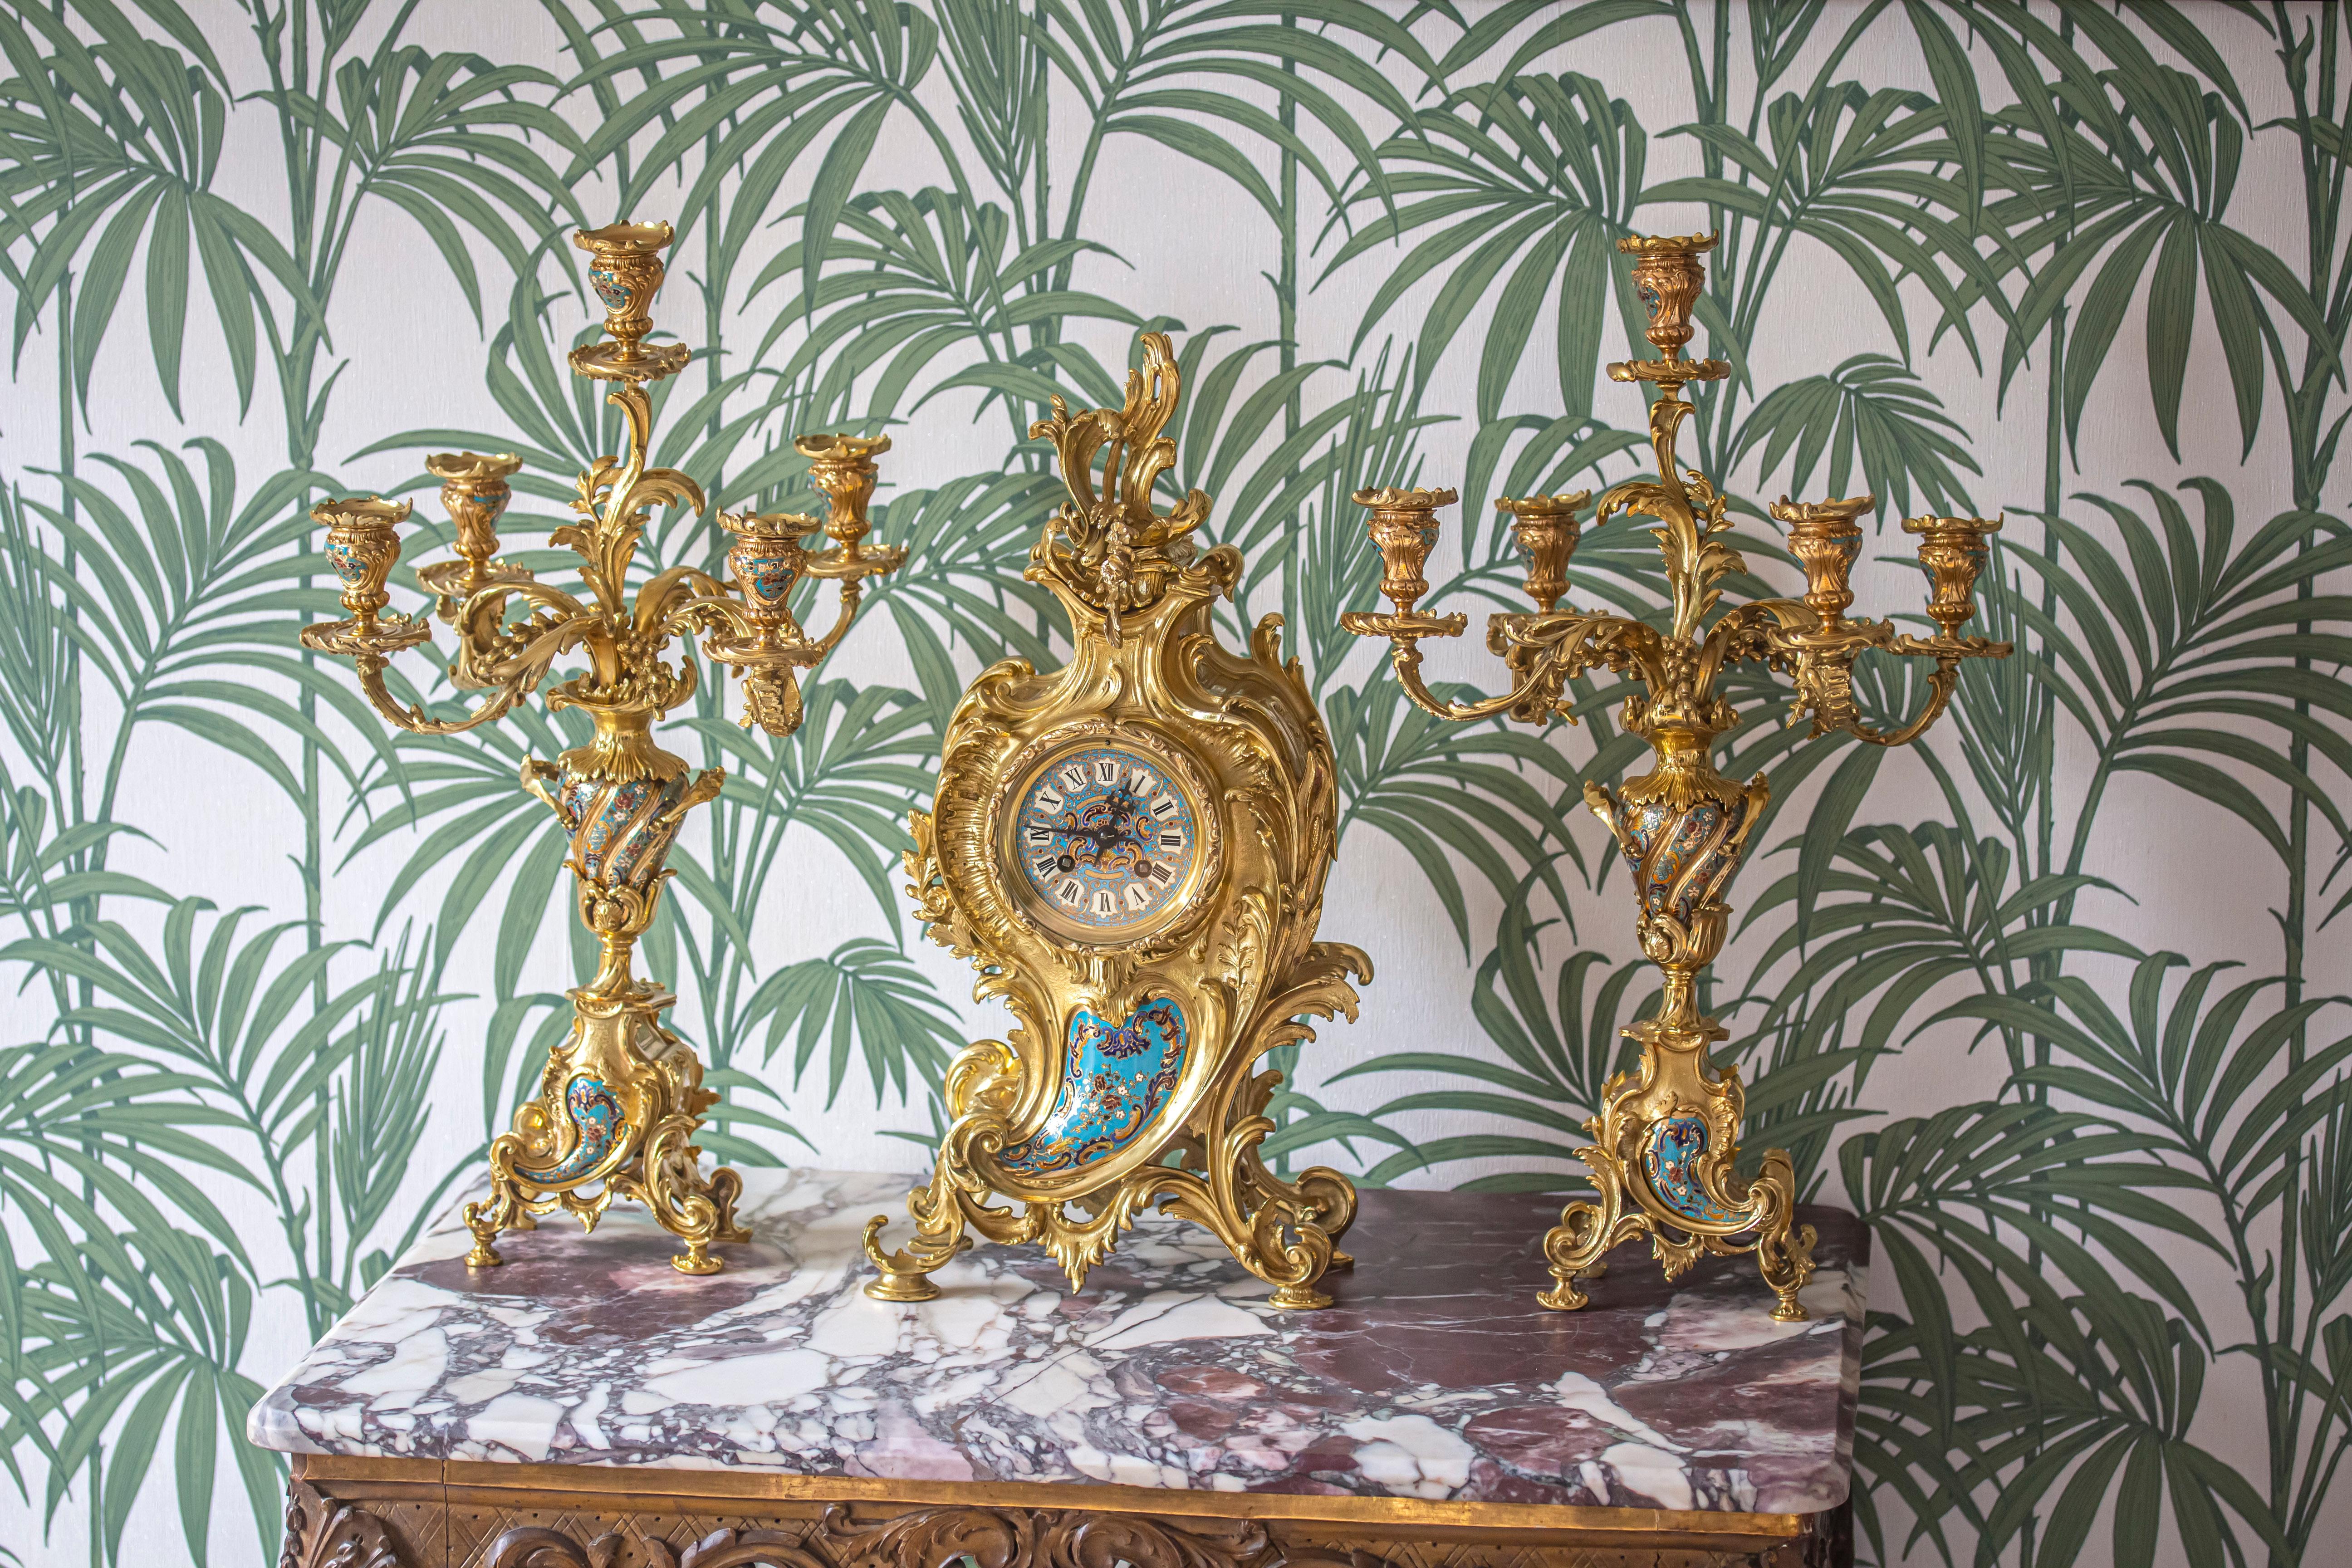 Fine garniture française de la fin du 19e siècle comprenant une paire de chandeliers et une pendule dans un ensemble assorti. Les garnitures sont audacieusement moulées avec une influence rococo dans le style Louis XV, décorées d'une belle larme